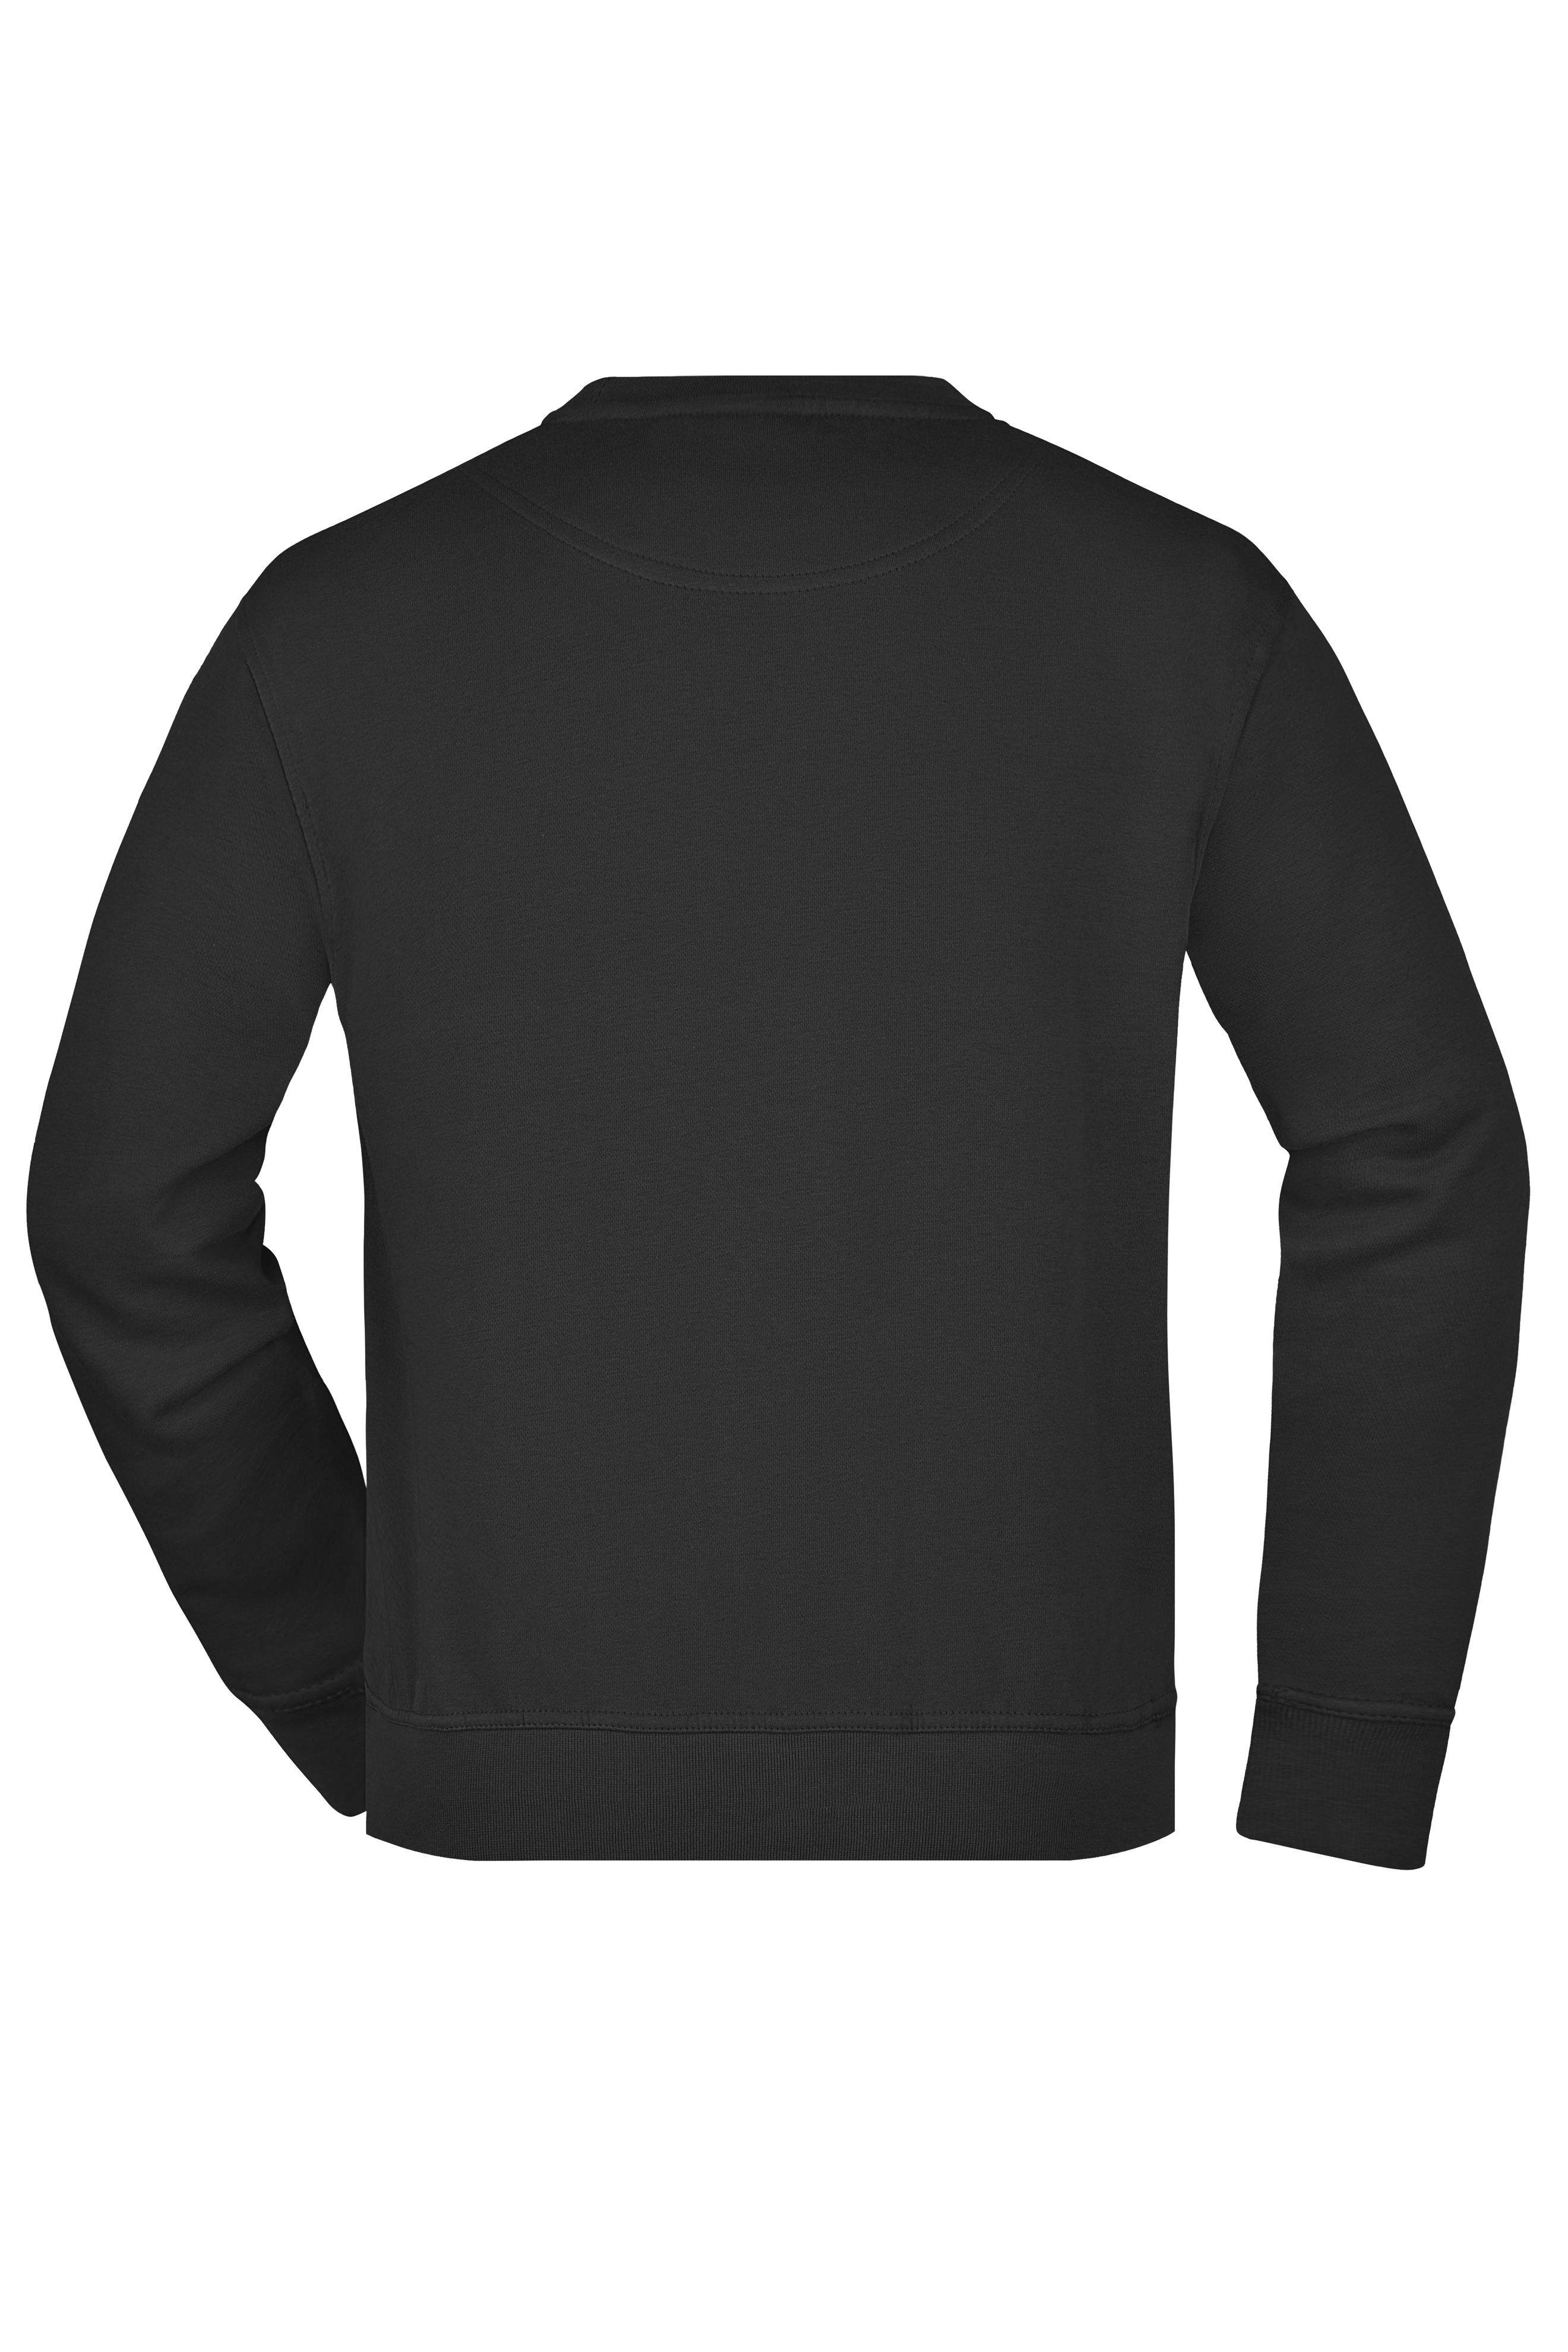 Workwear Sweatshirt JN840 Klassisches Rundhals-Sweatshirt